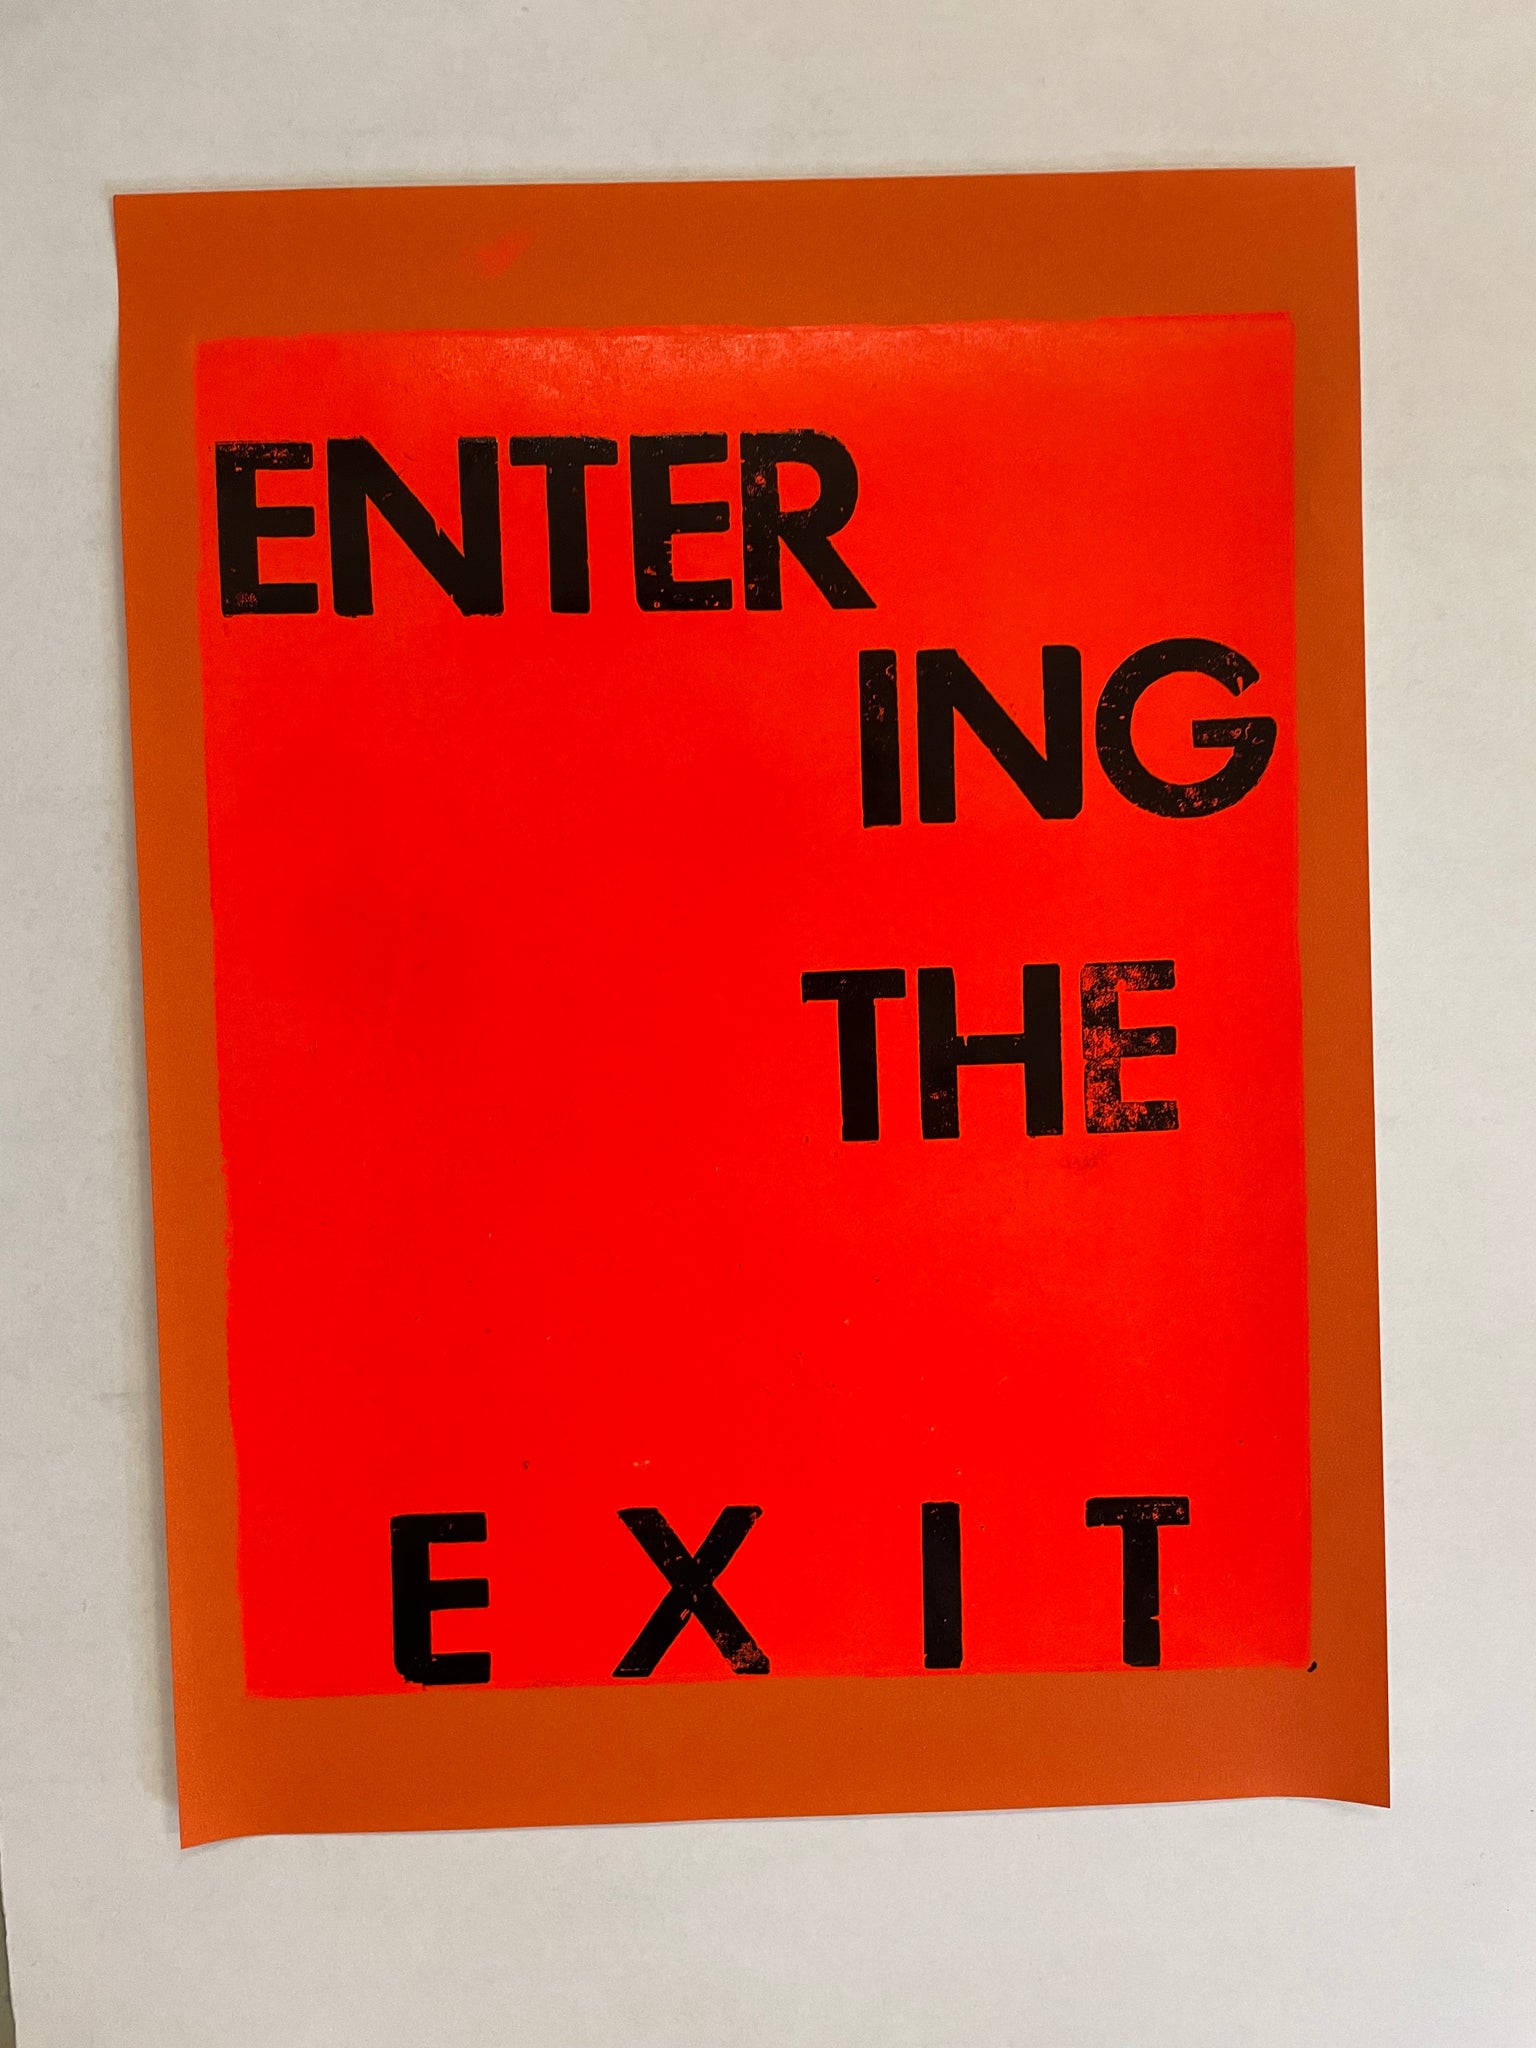 Entering the exit no4